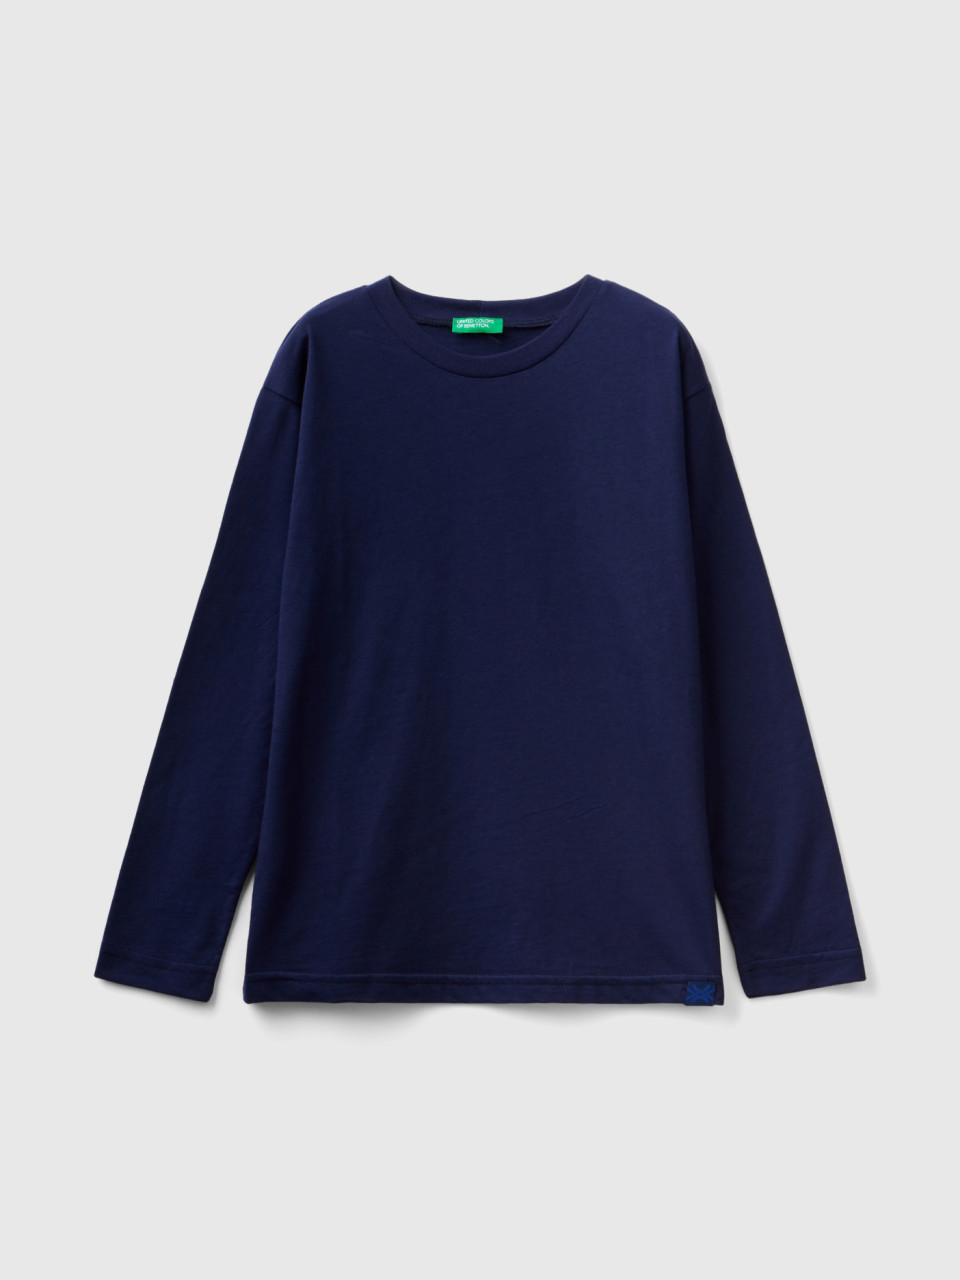 Benetton, T-shirt Girocollo 100% Cotone Bio, Blu Scuro, Bambini